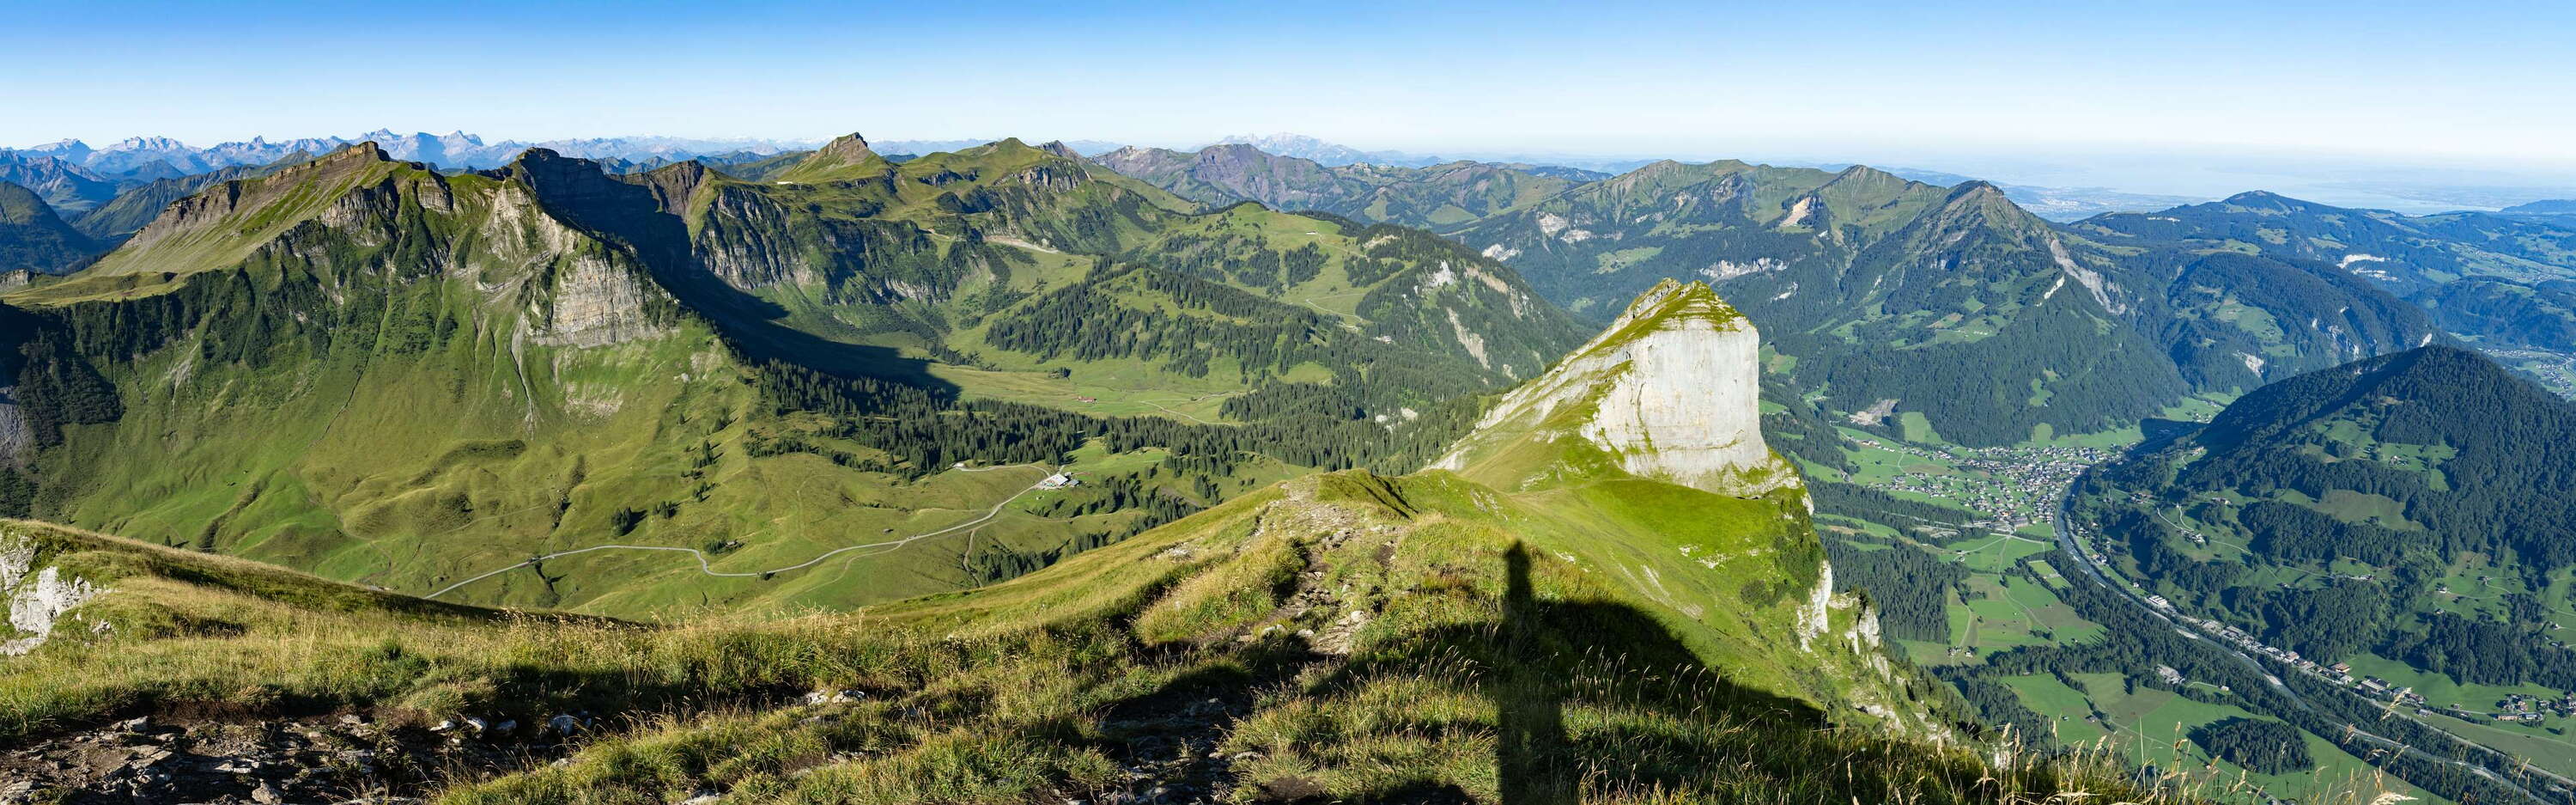 Bregenzerwald | Panoramic view